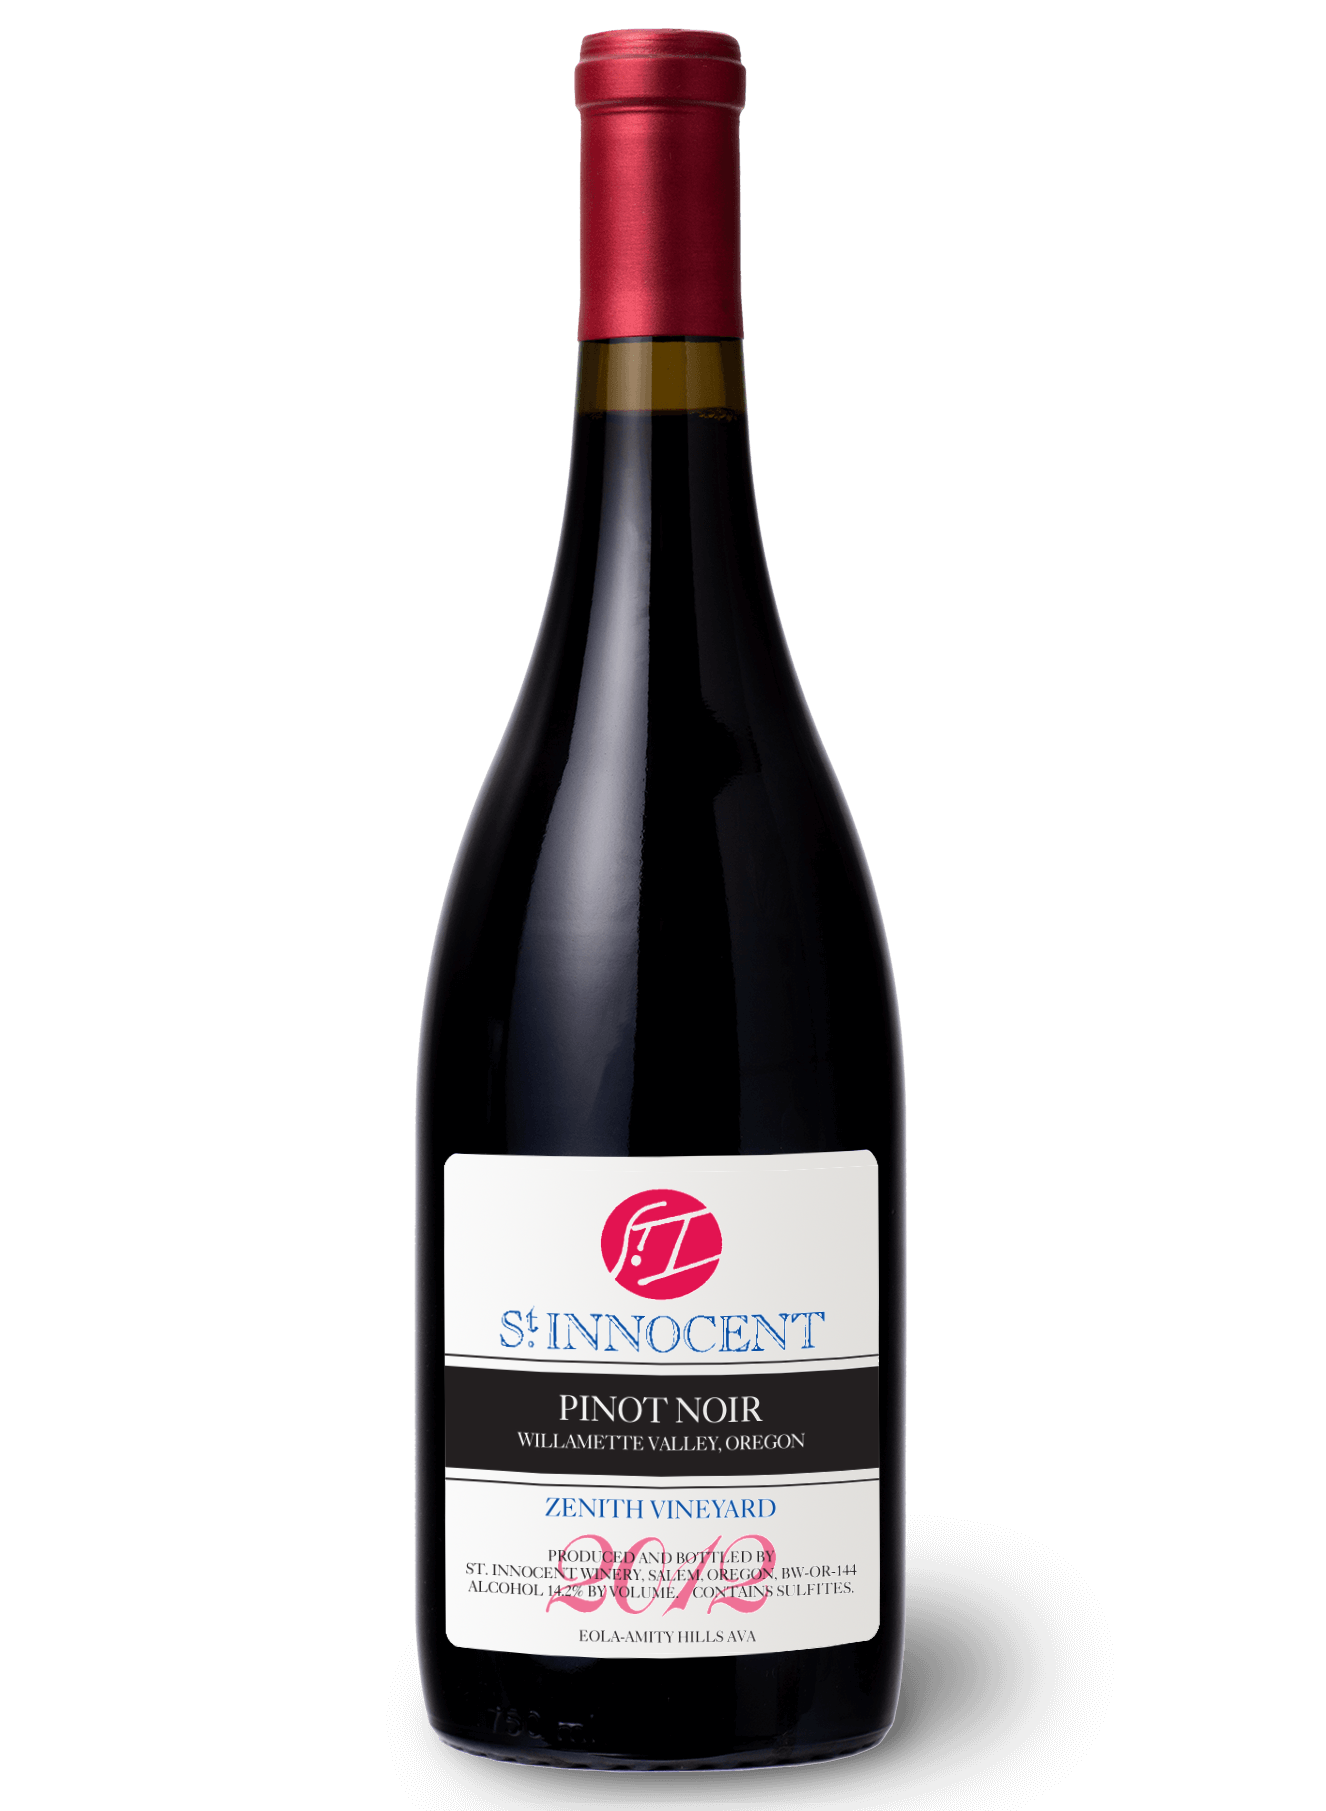 Bottle of 2012 St. Innocent Pinot Noir